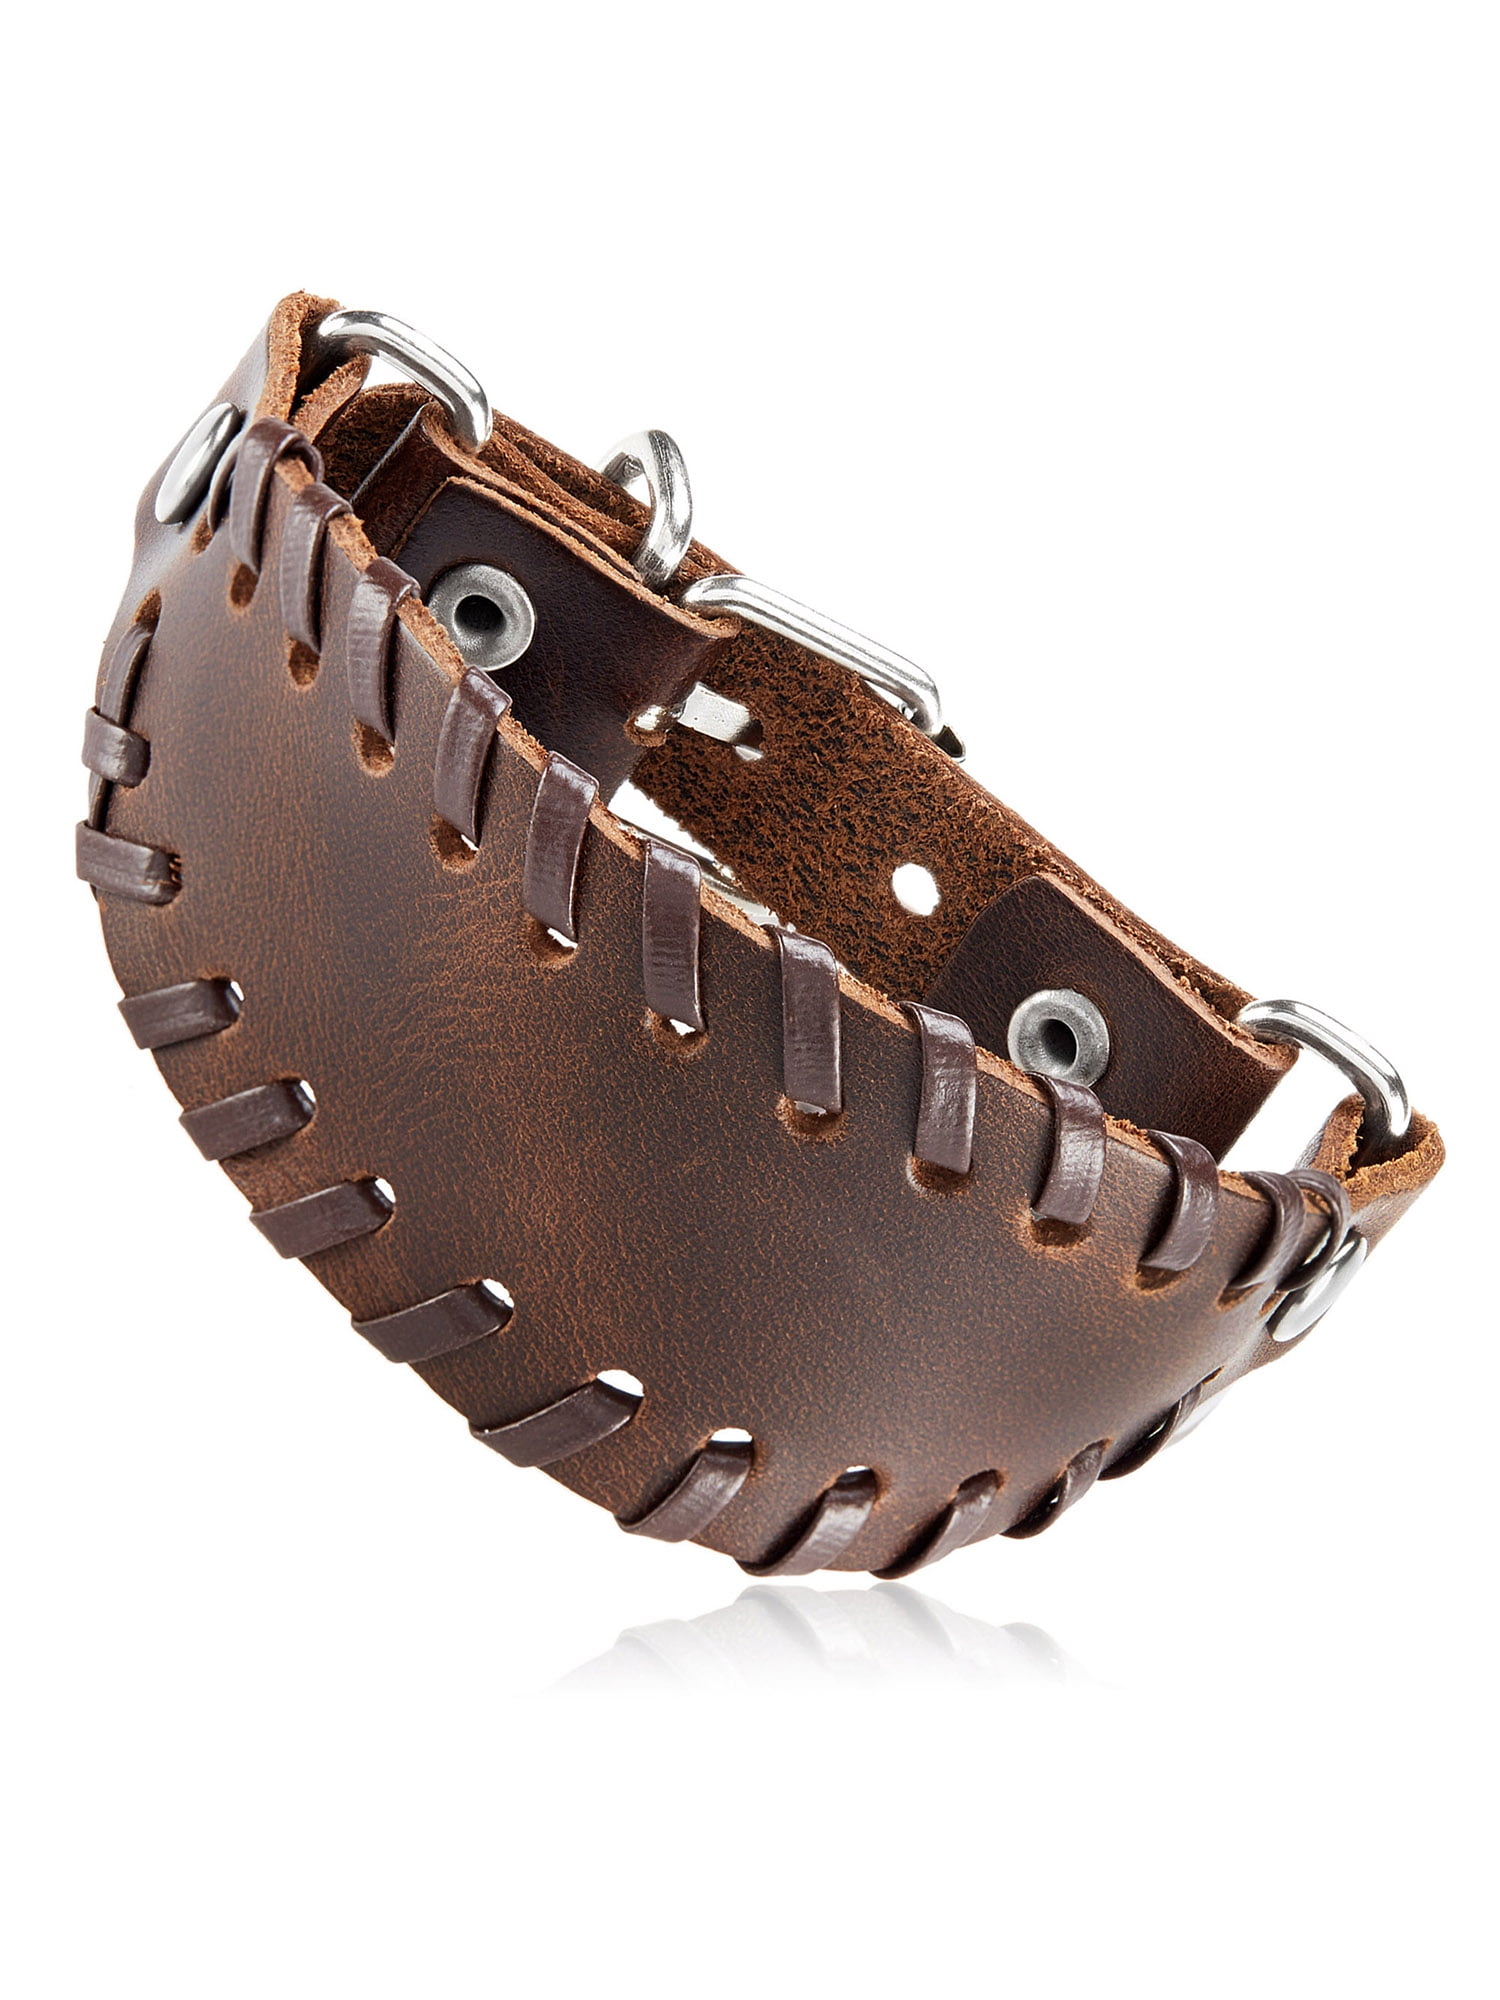 Men's Brown Leather Stitched Bund Buckle Cuff Bracelet (36mm) - 9"